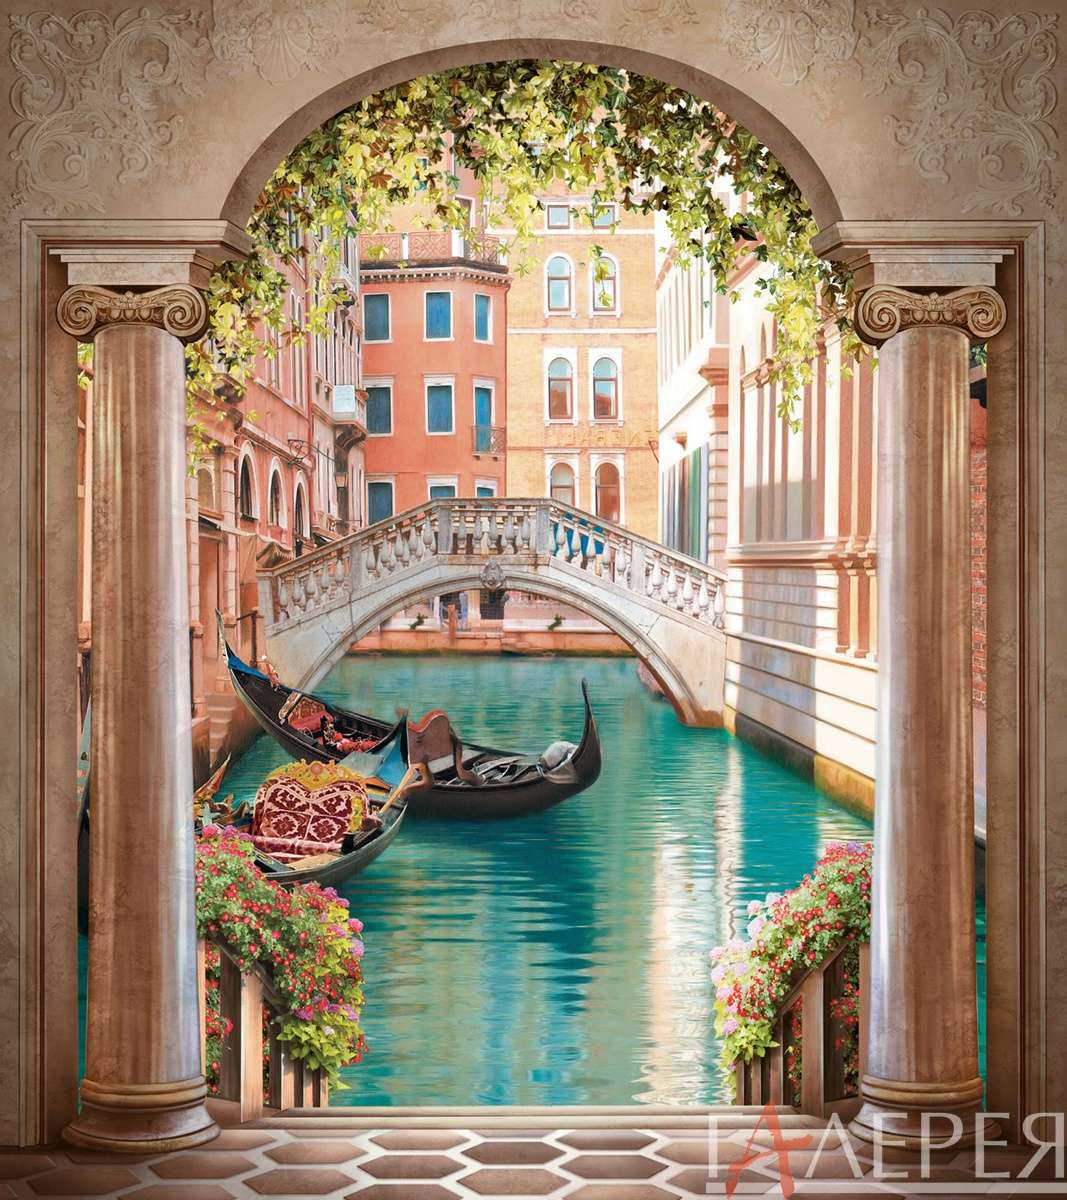 Города, Италия, архитектура, здания, лодка, окна, вода, мост, арка, цветы, колоны